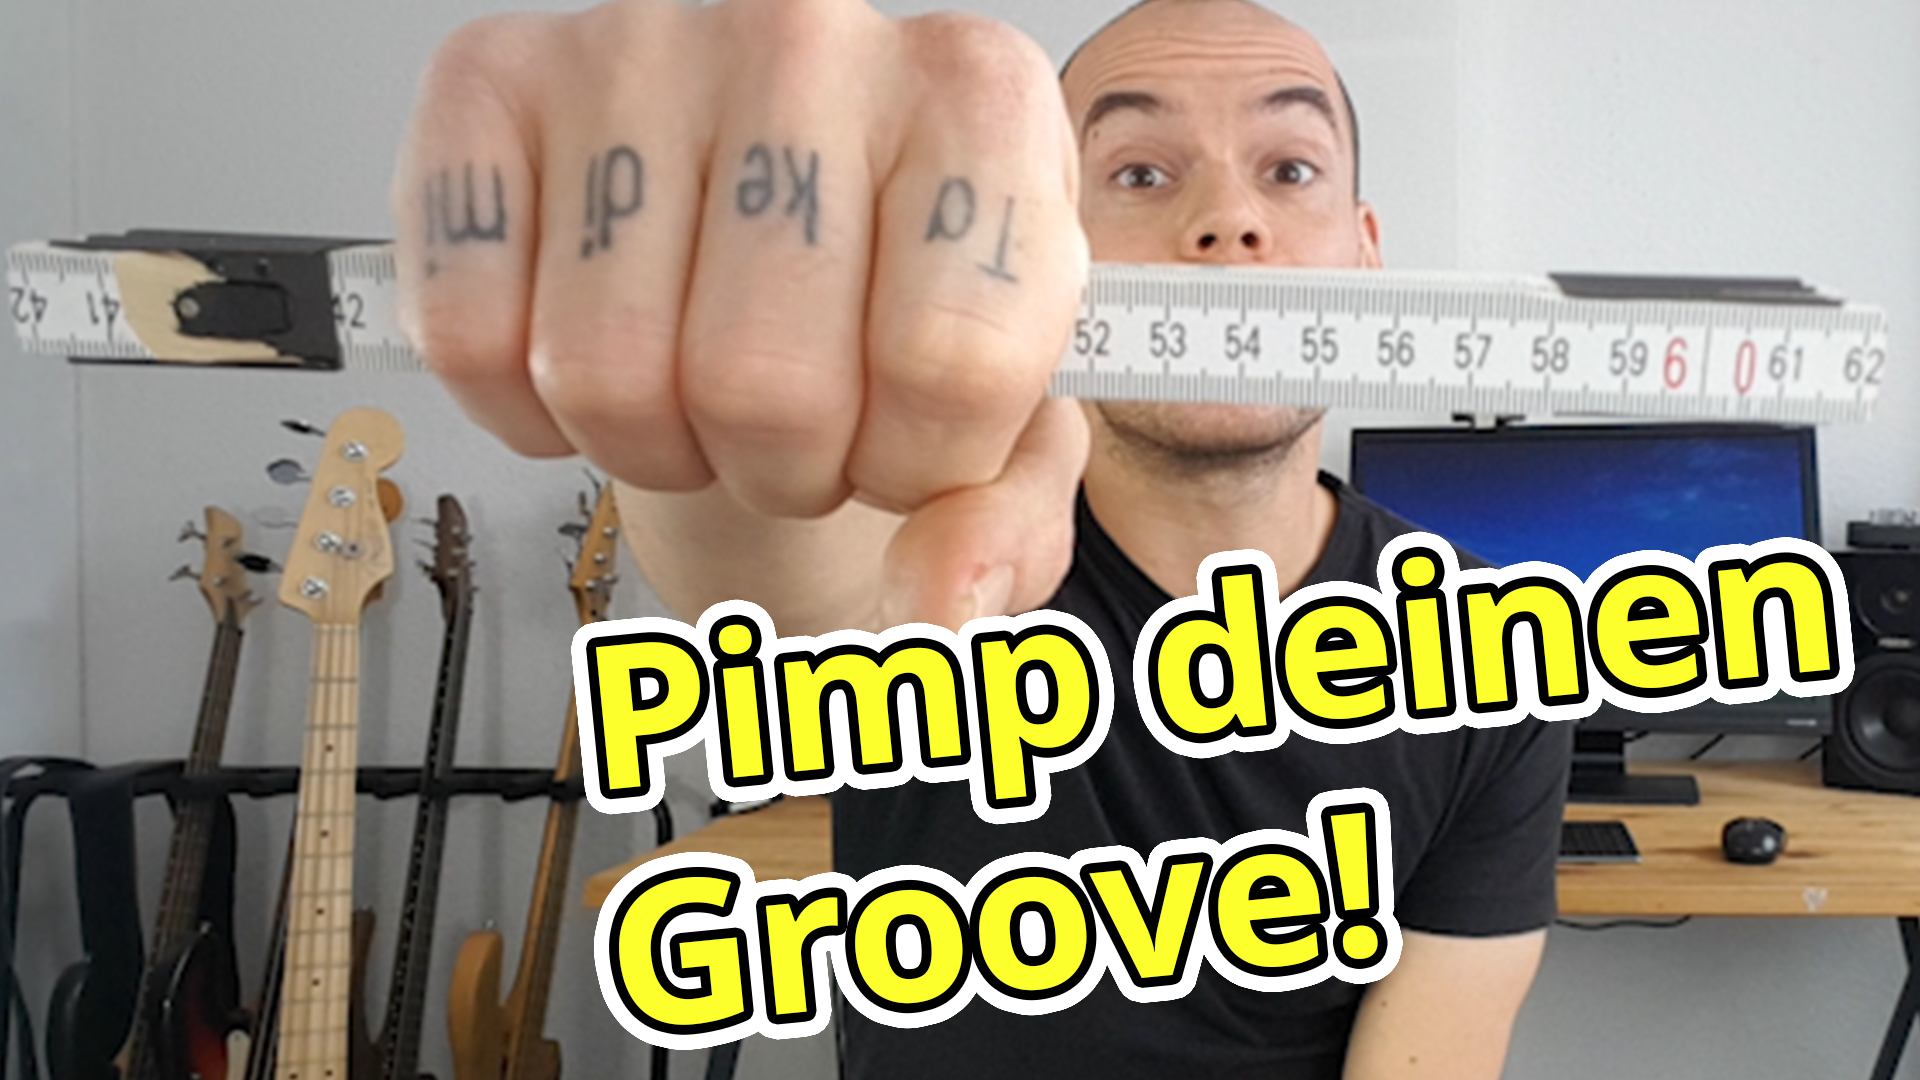 Pimp deinen Groove mit TONLÄNGEN – ohne Rhythmus oder Noten zu verändern